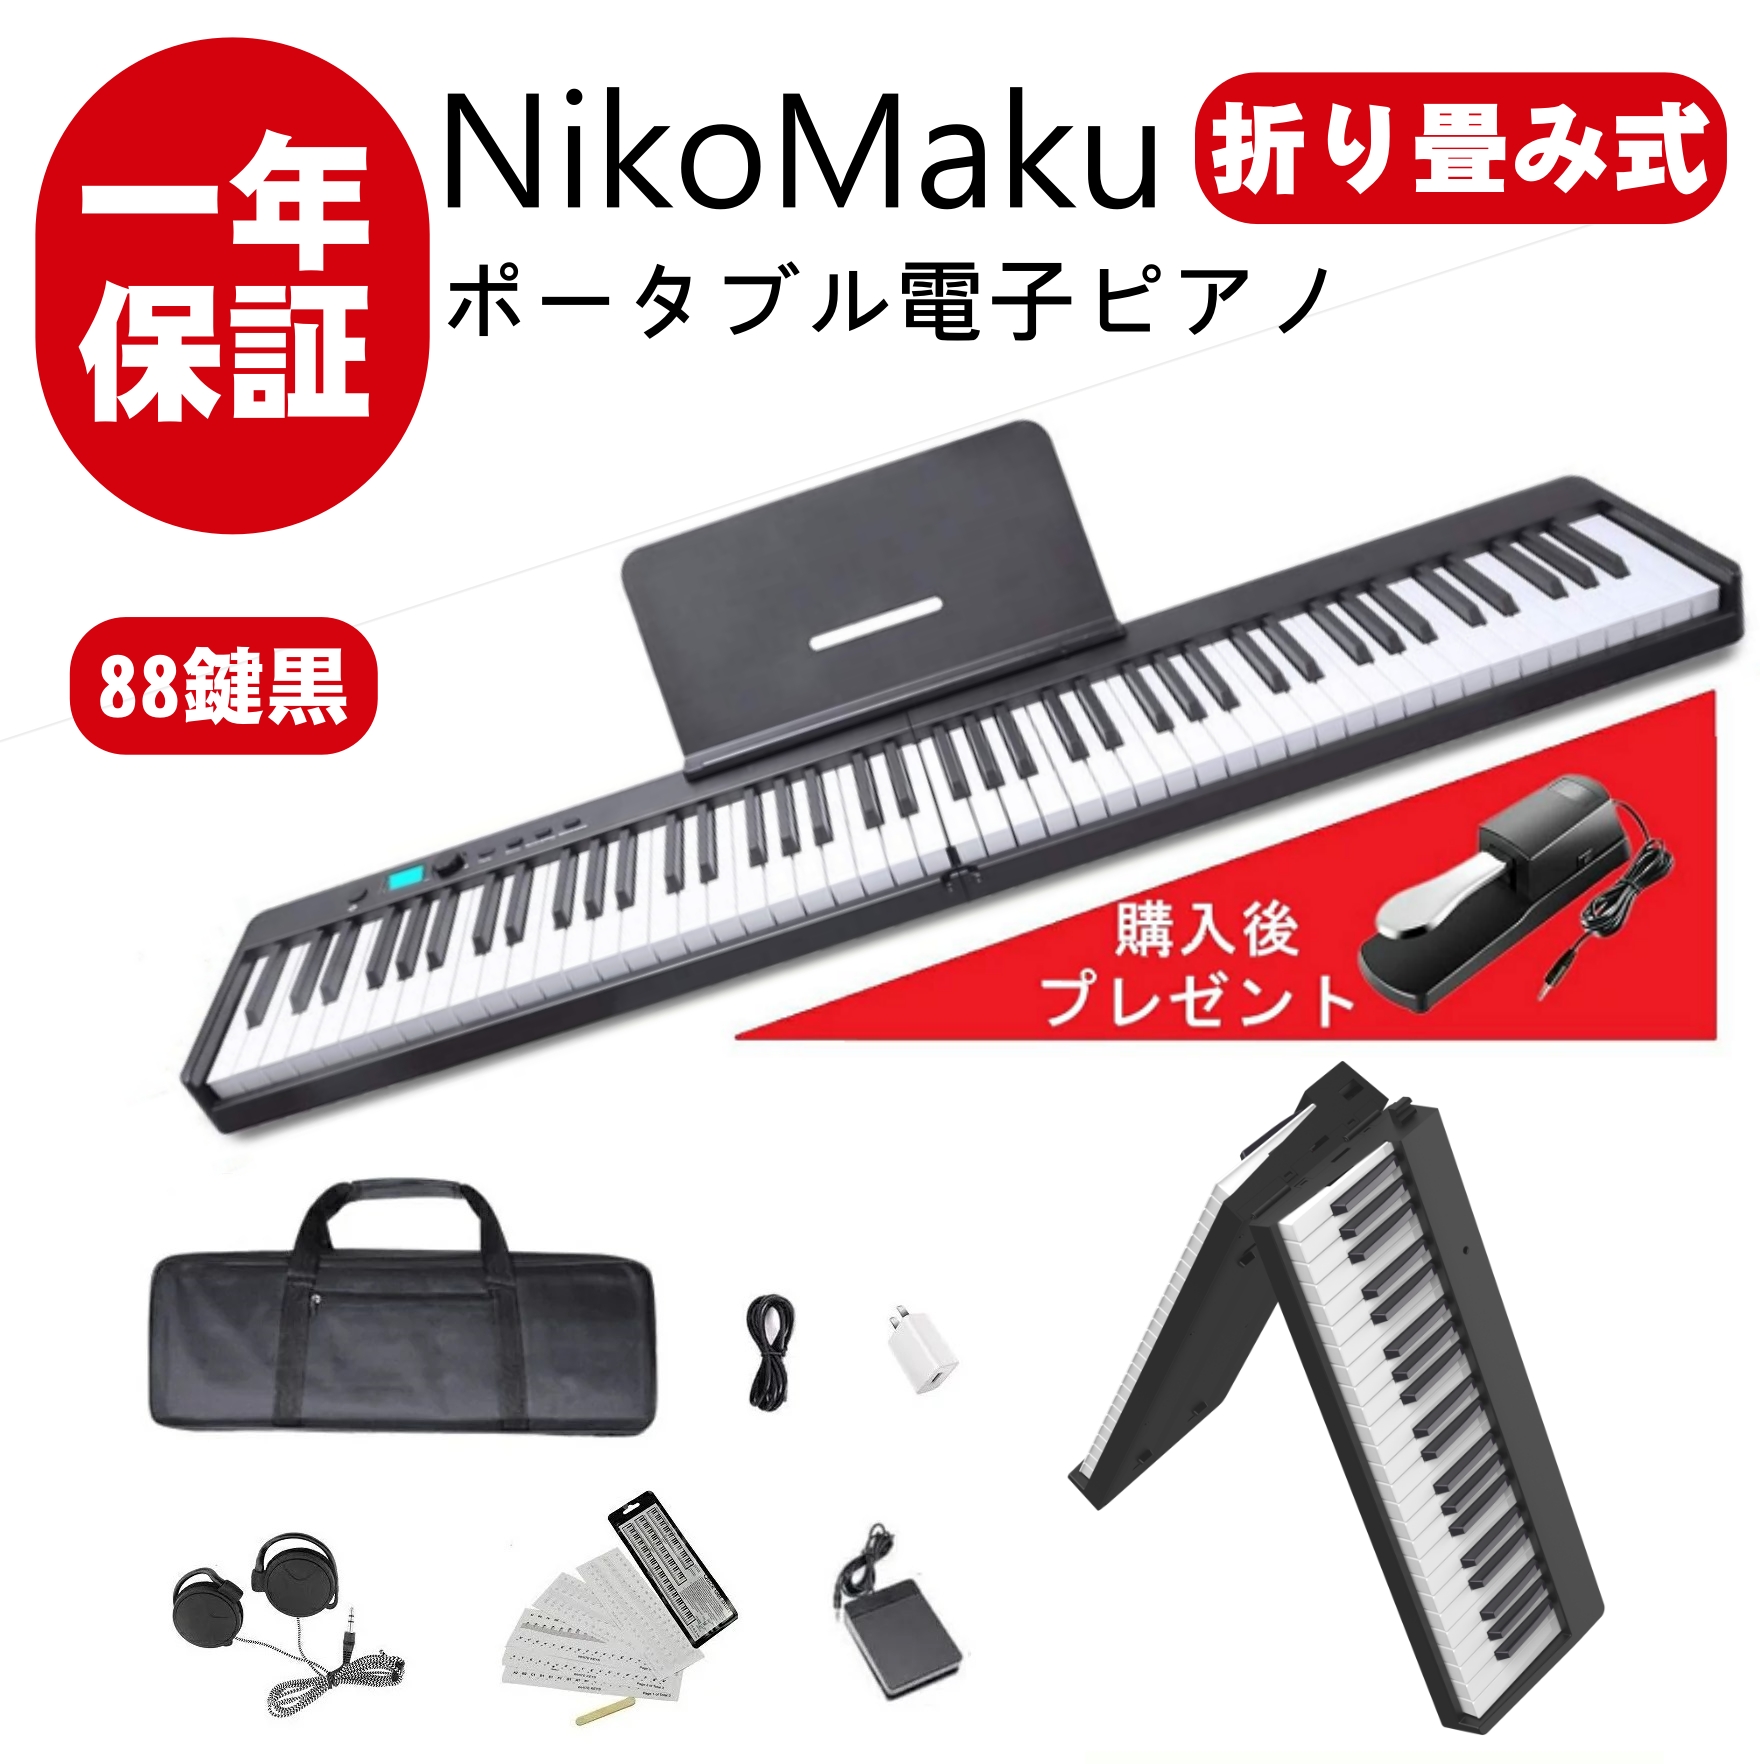 ニコマク NikoMaku 電子ピアノ 携帯型 SWAN 61鍵盤 軽量小型 本当の 